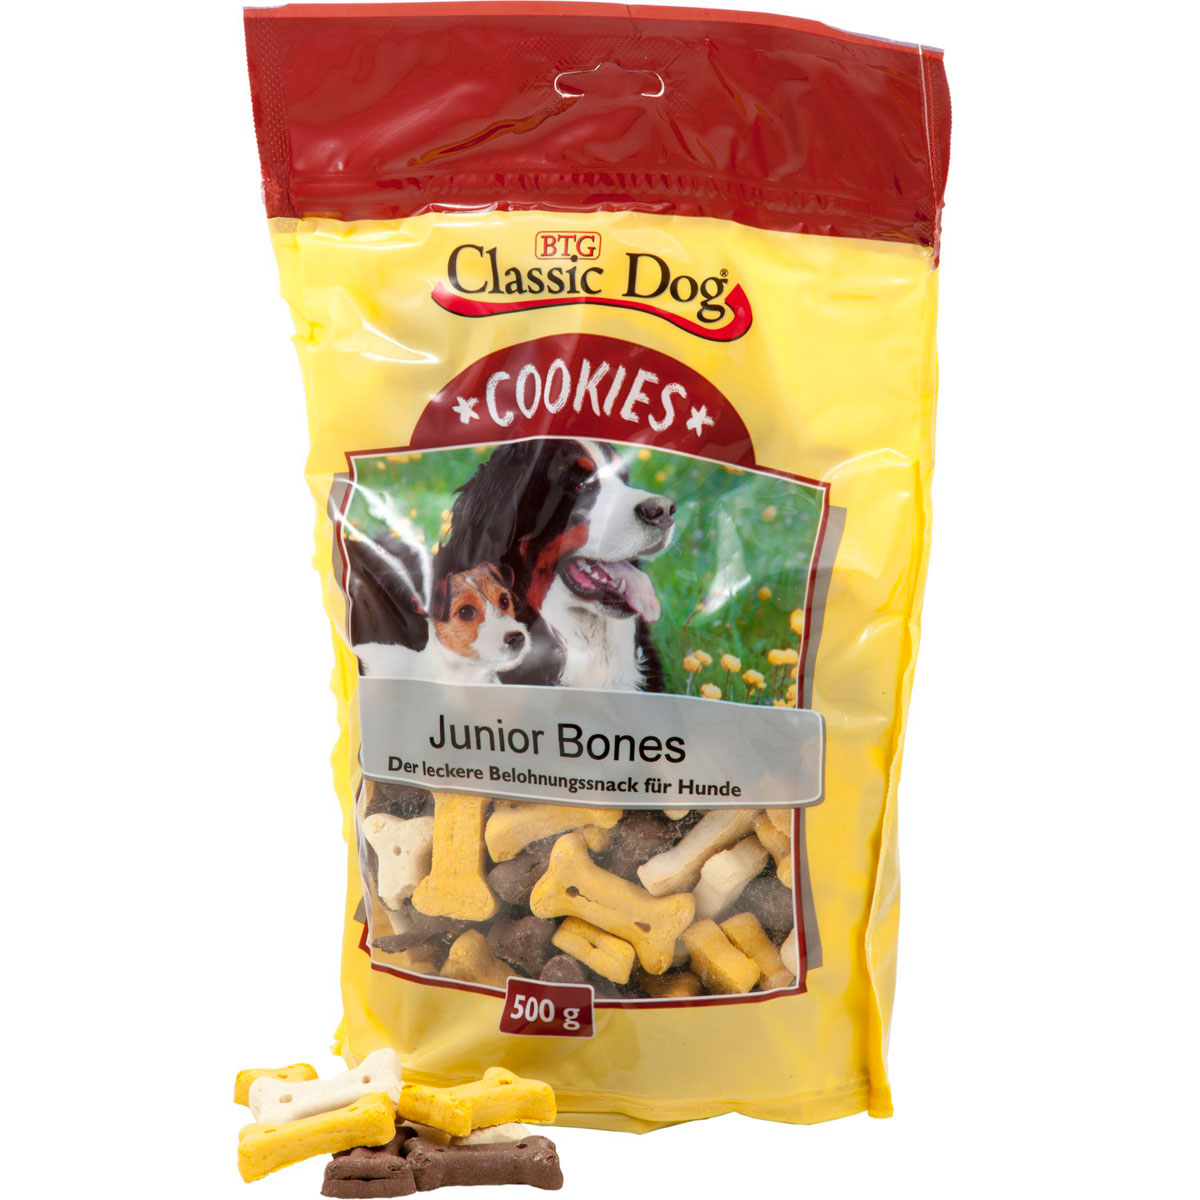 Cookies Junior Bones 500g